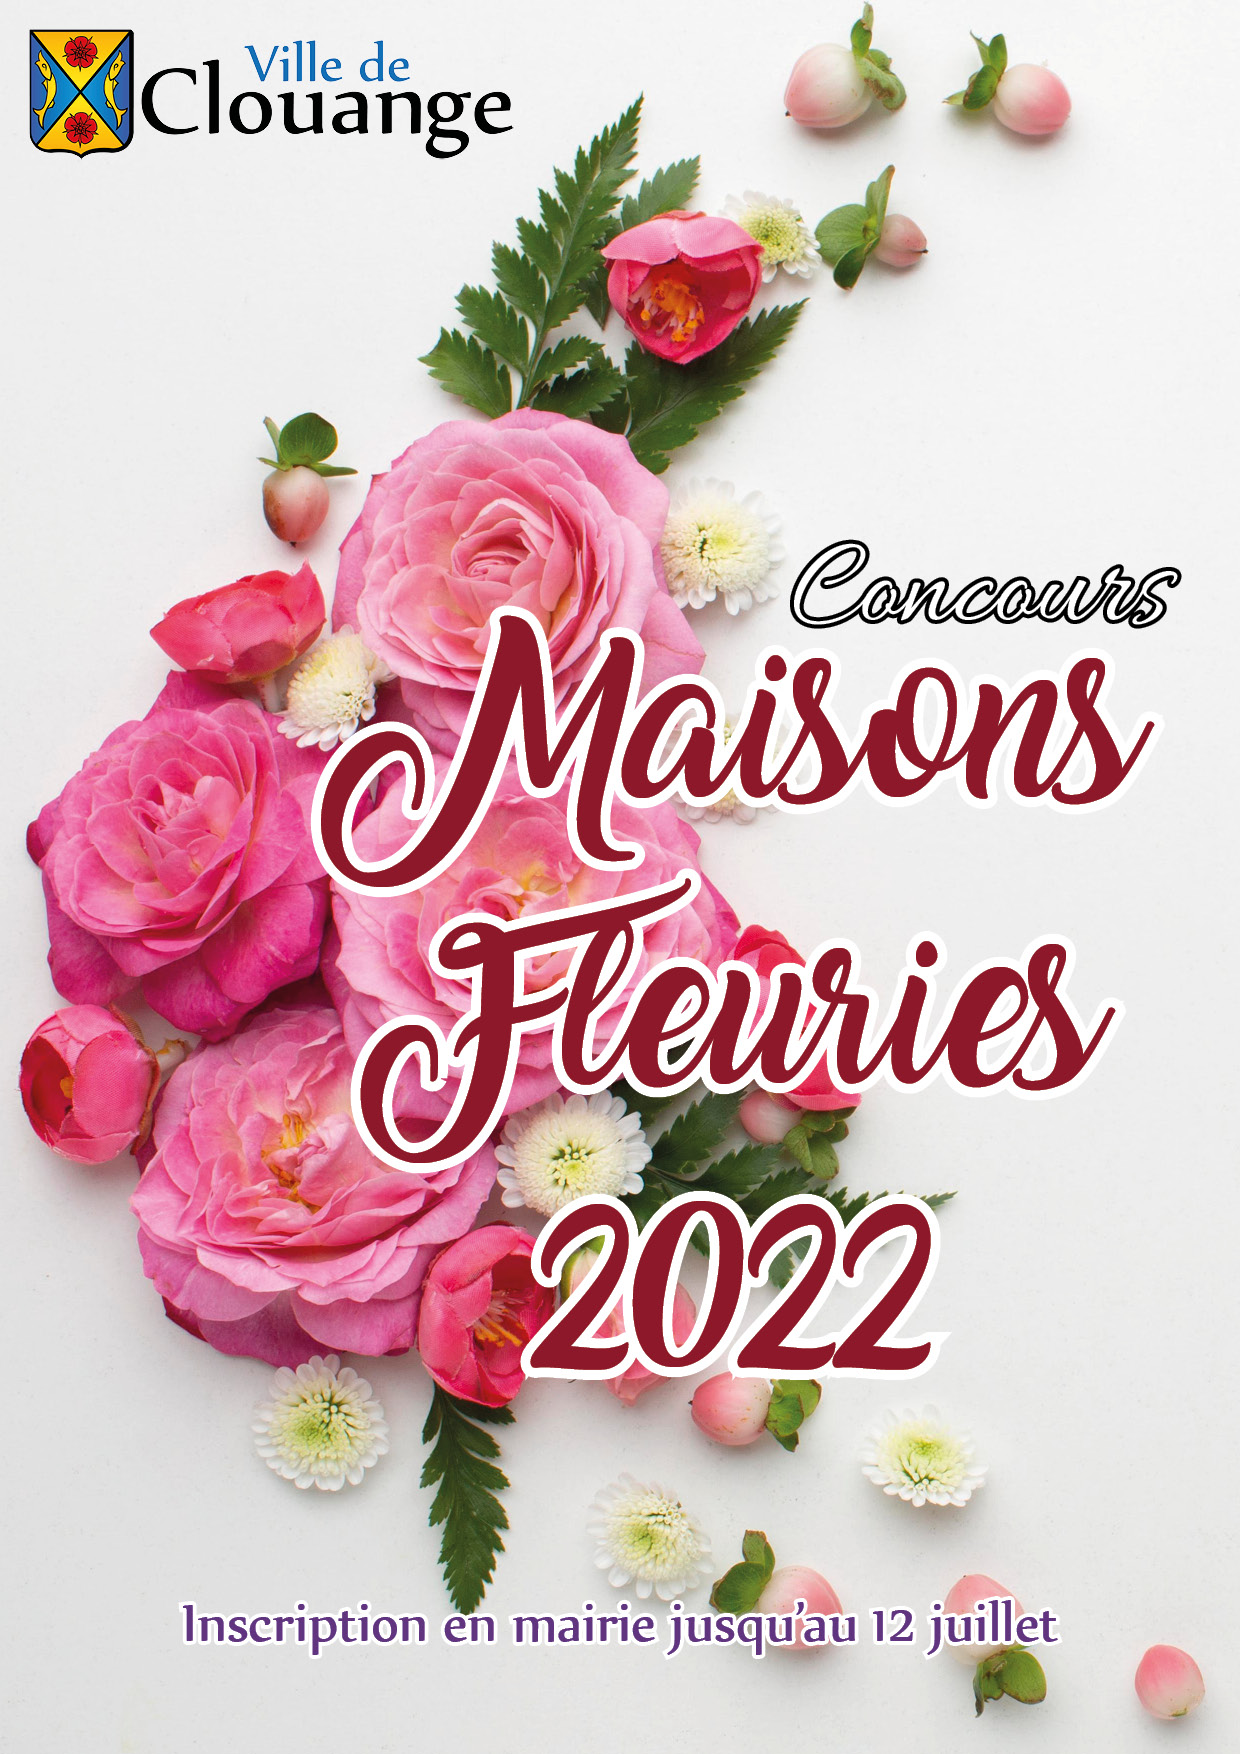 Concours des maisons fleuries 2022